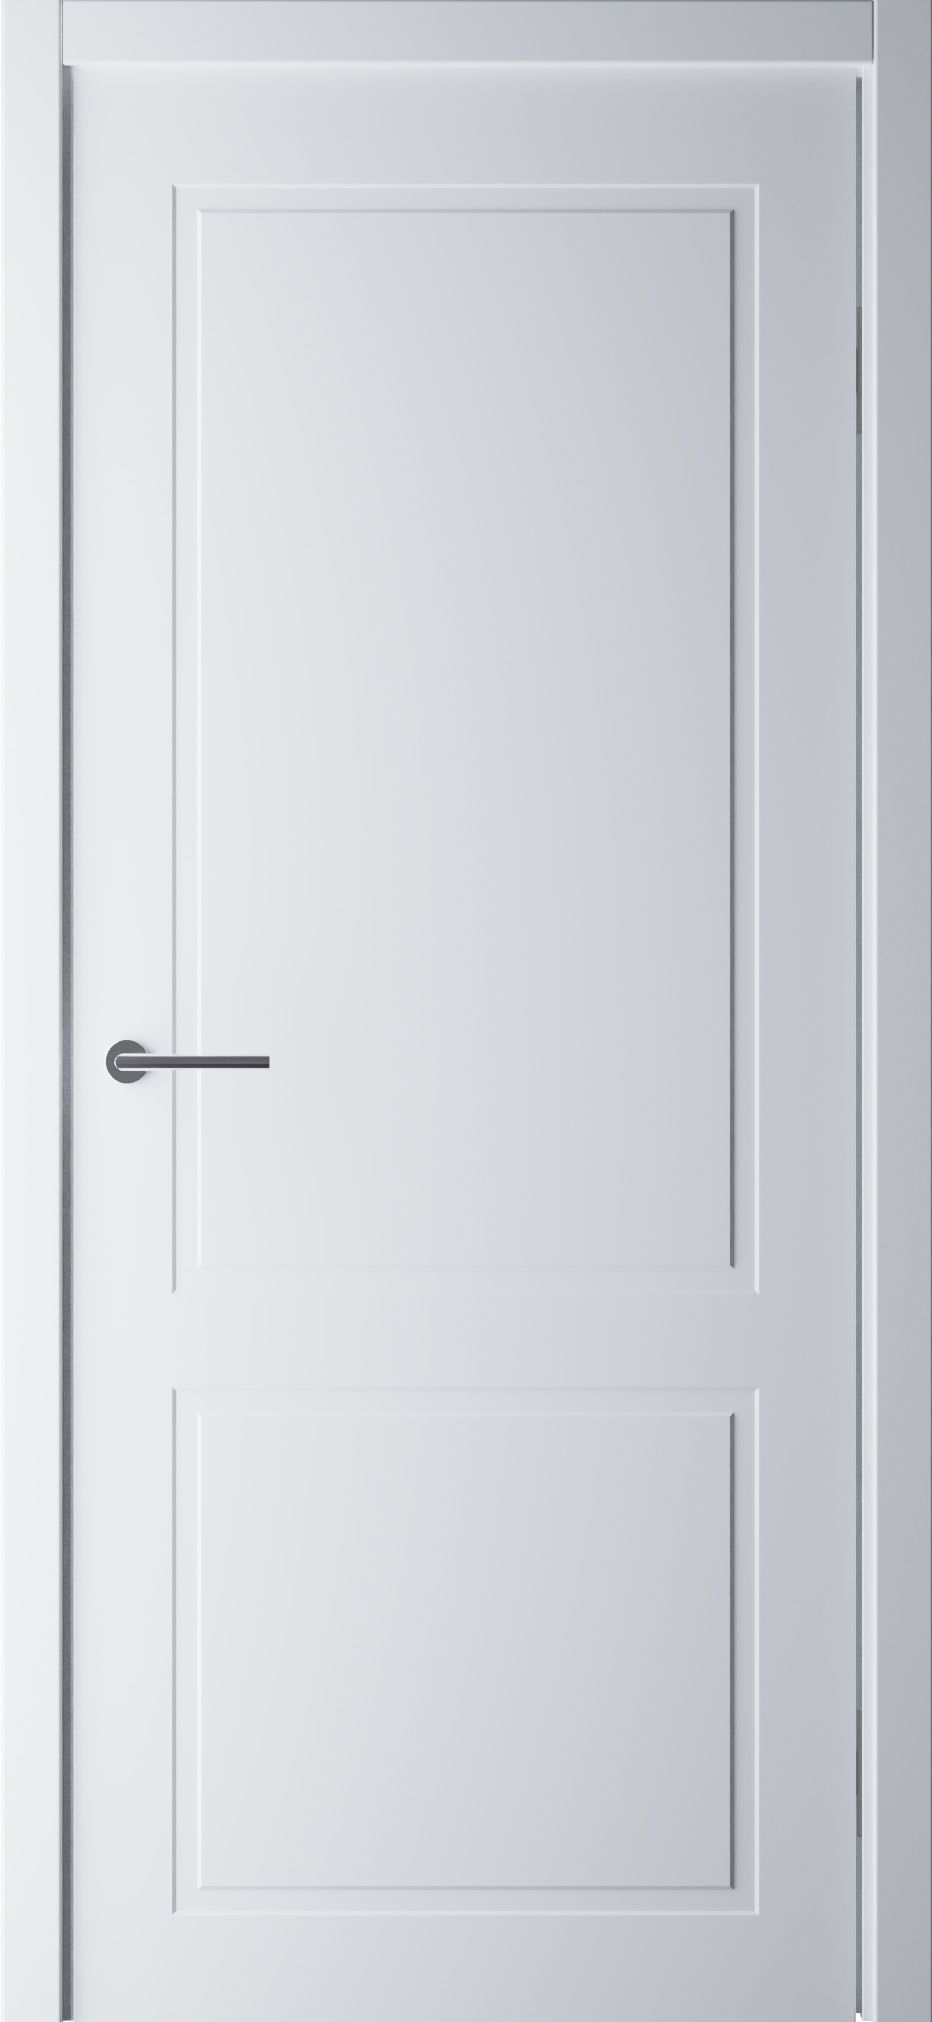 Полотно дверное глухое СХЕМА Эмаль-2, ПГ СтильНео-2 800 белый (без замка)